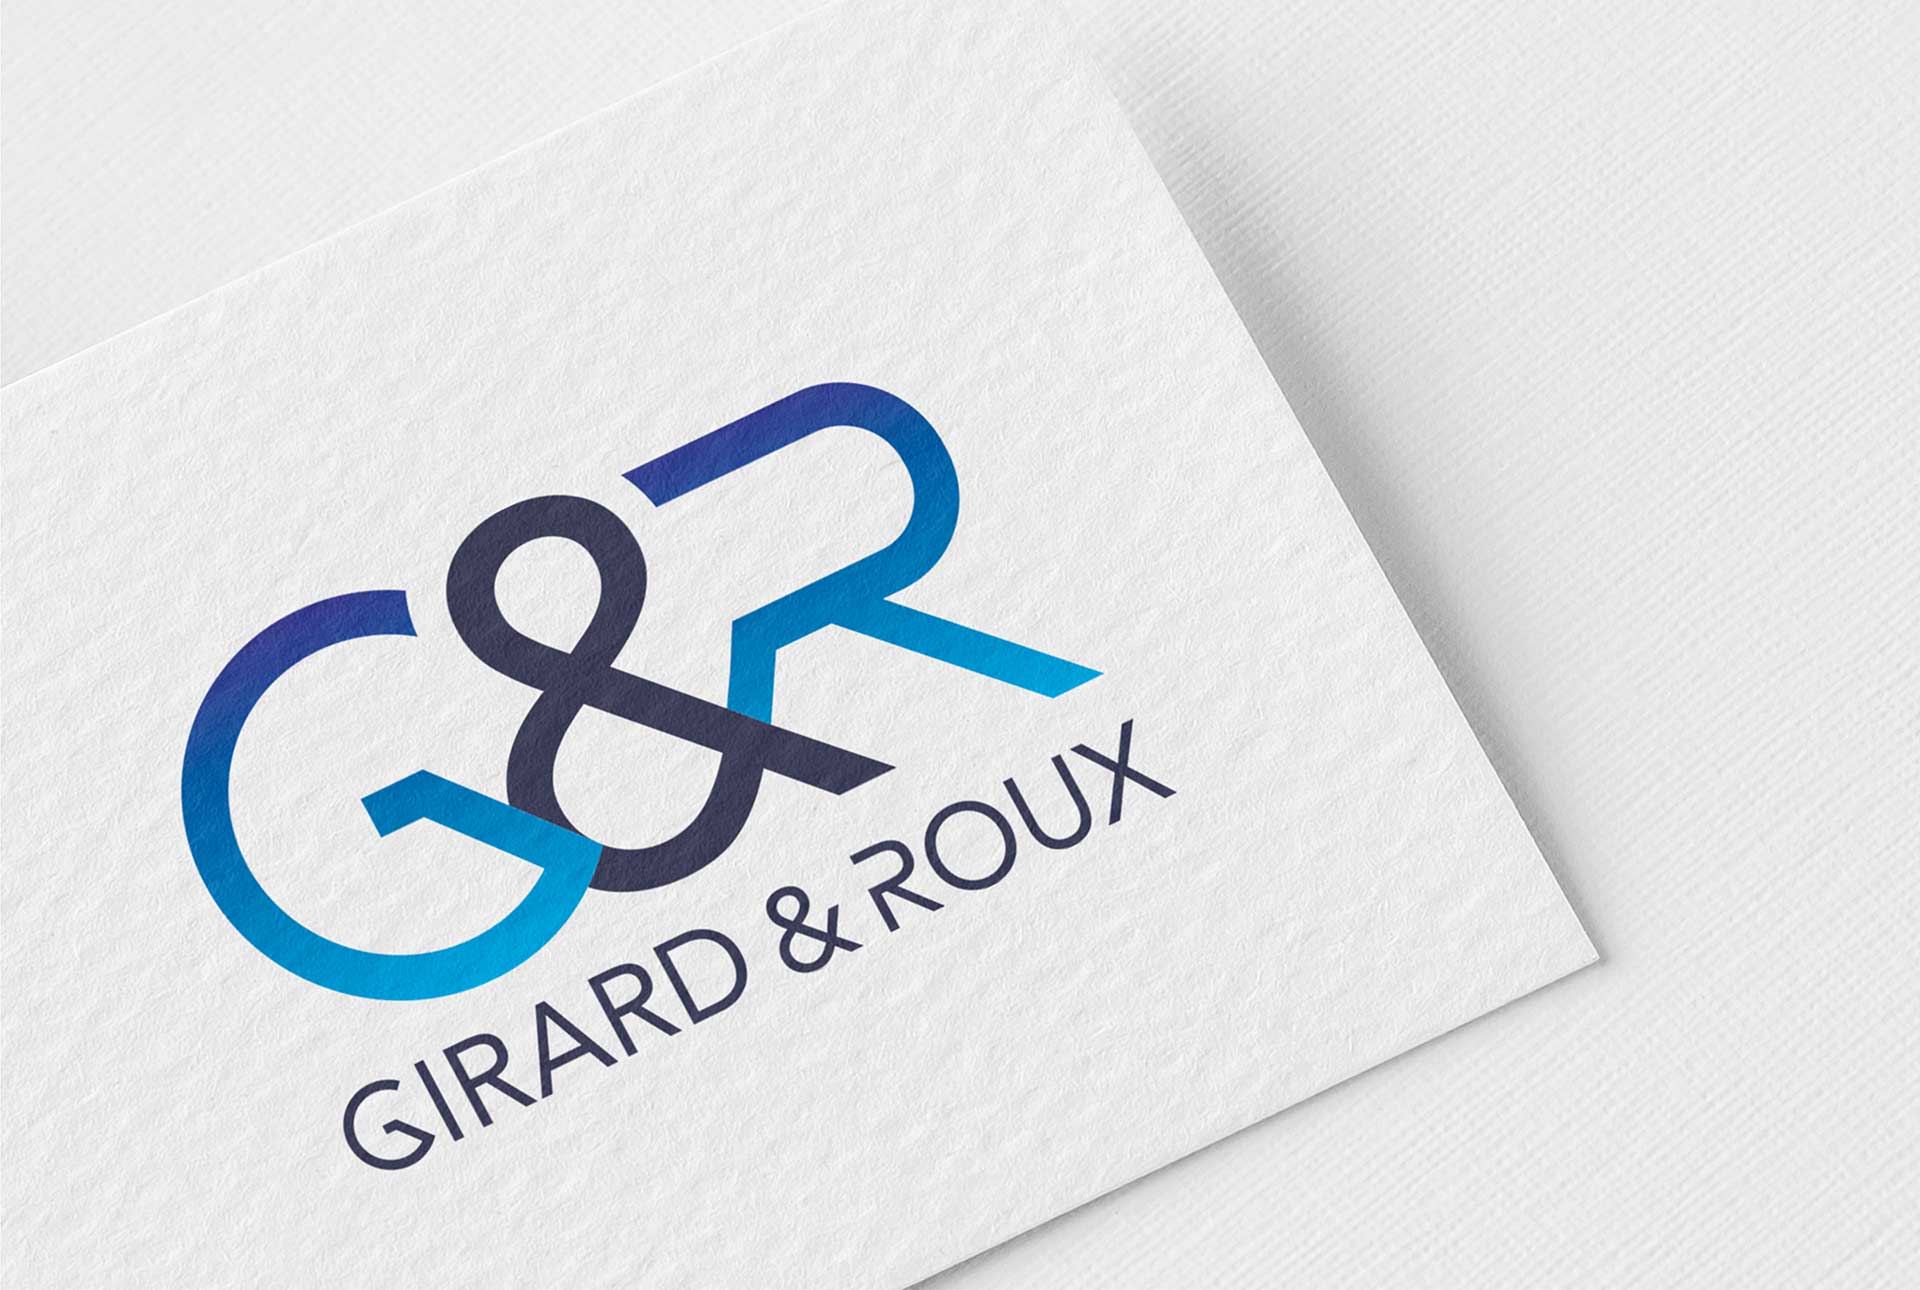 Girard et roux creation logo alimentaire restauration graphiste grenoble